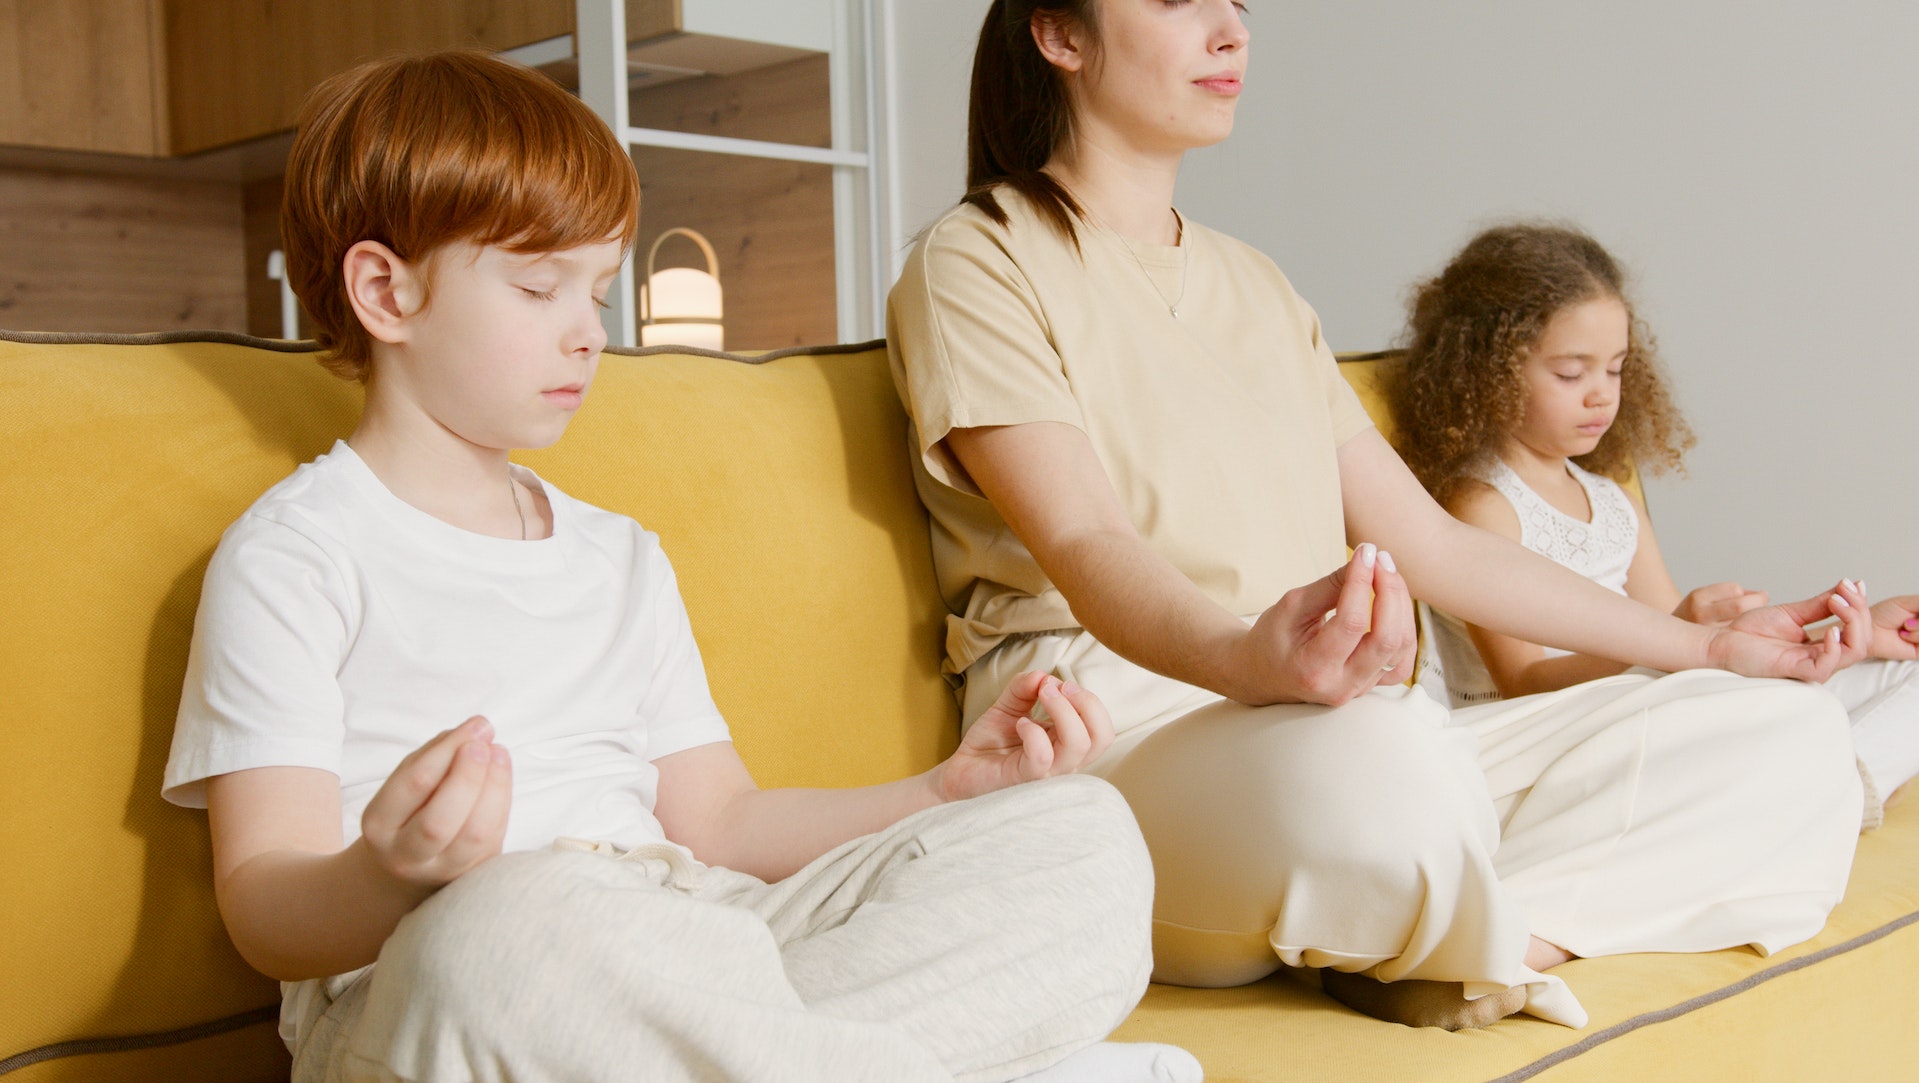 Meditation for kids